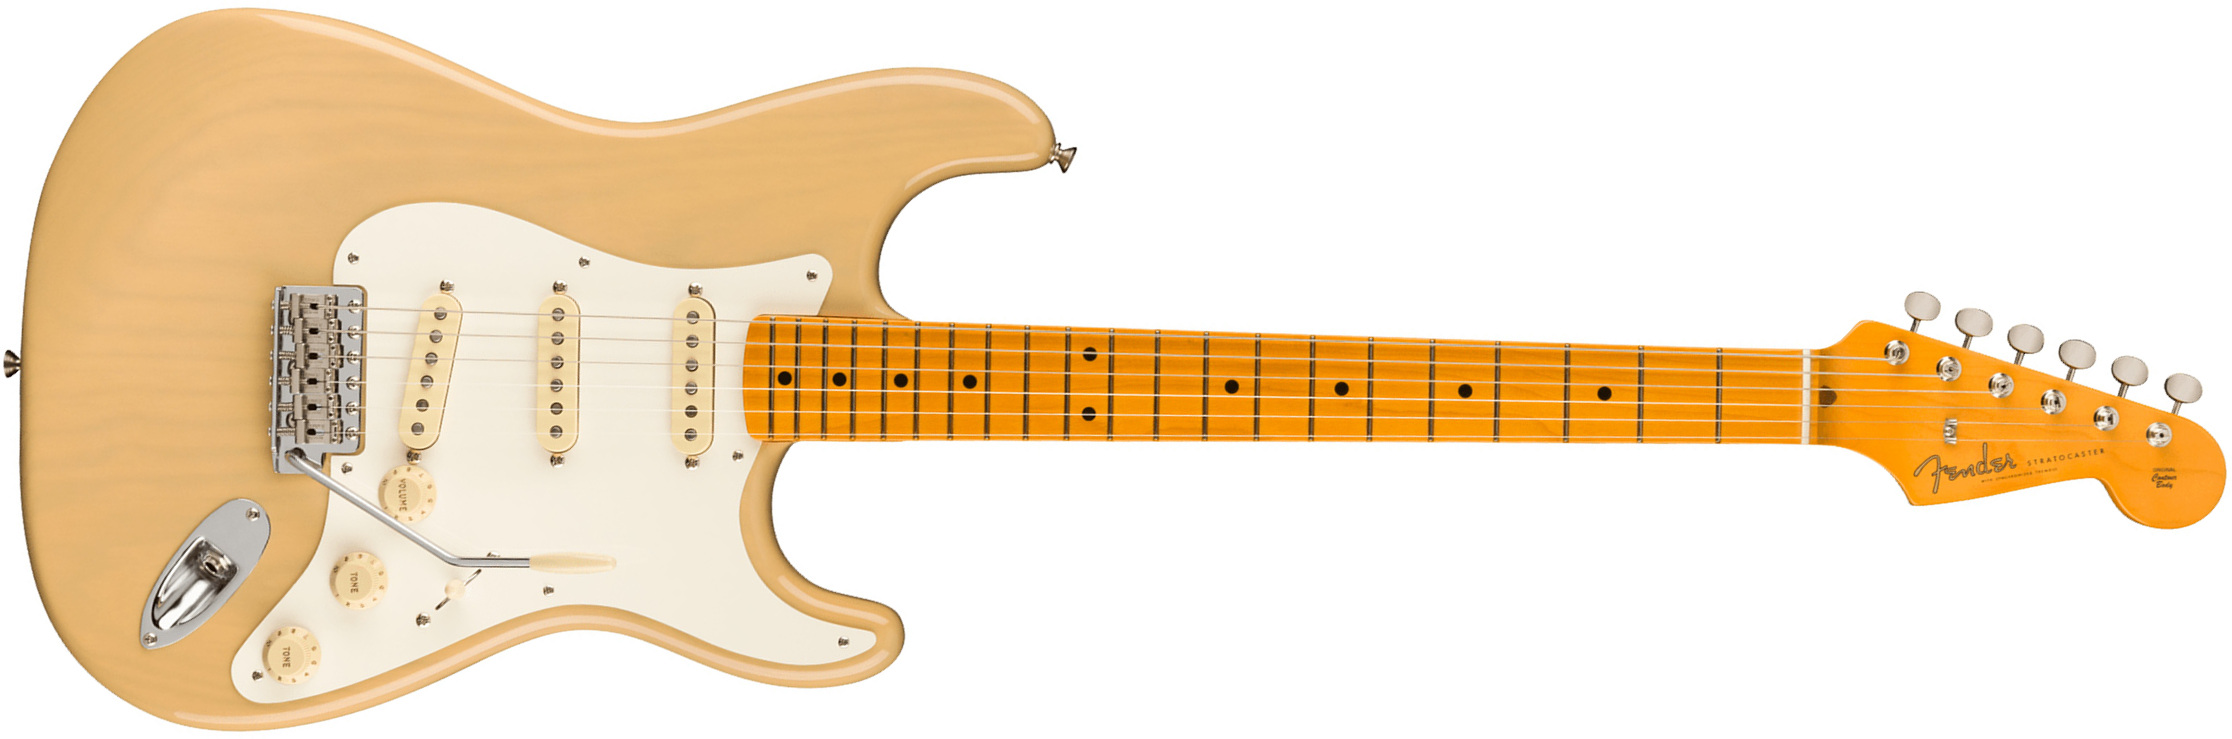 Fender Strat 1957 American Vintage Ii Usa 3s Trem Mn - Vintage Blonde - Str shape electric guitar - Main picture